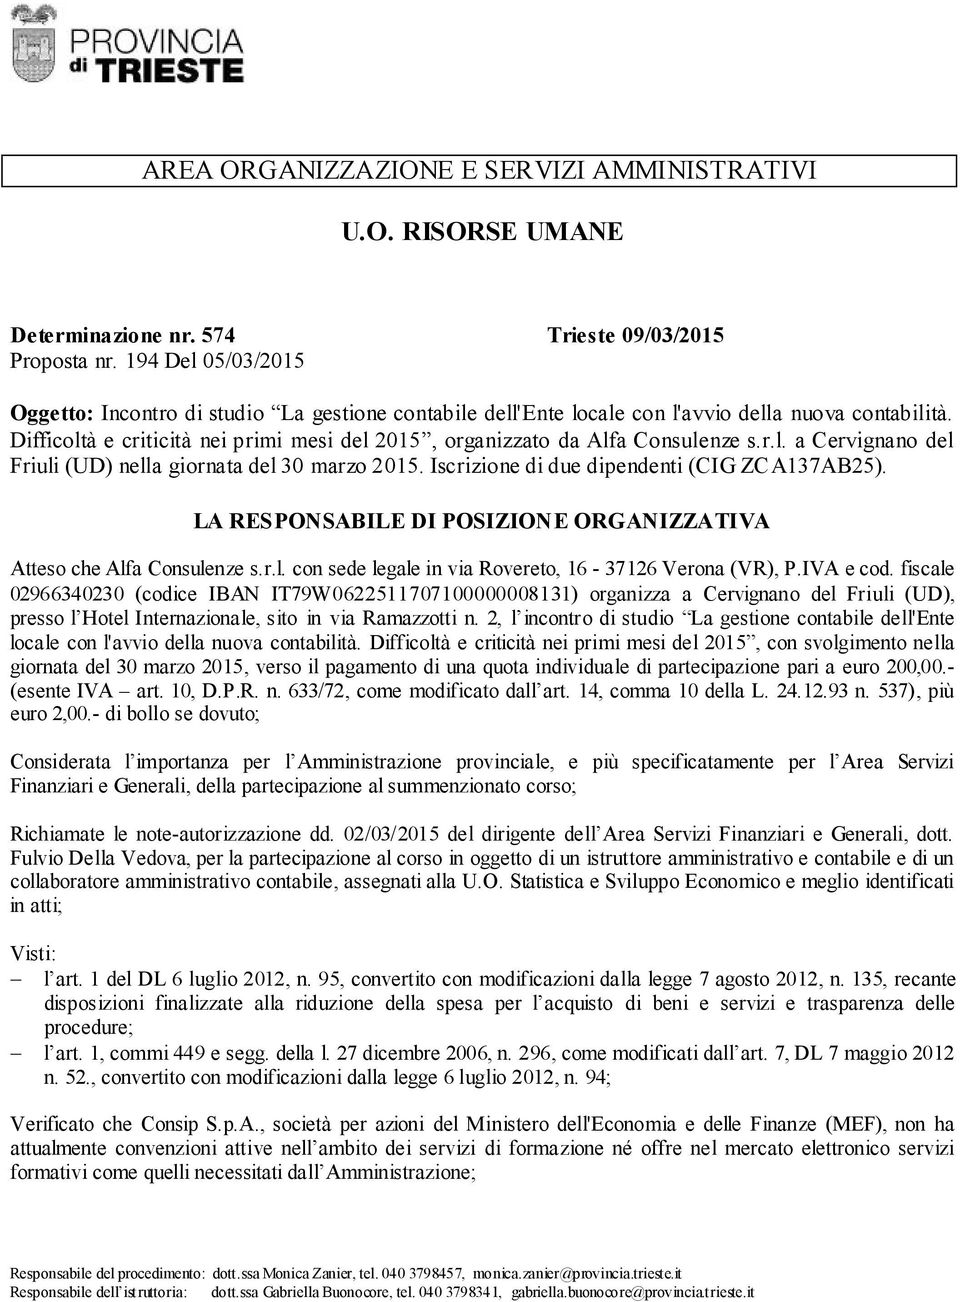 Difficoltà e criticità nei primi mesi del 2015, organizzato da Alfa Consulenze s.r.l. a Cervignano del Friuli (UD) nella giornata del 30 marzo 2015. Iscrizione di due dipendenti (CIG ZCA137AB25).